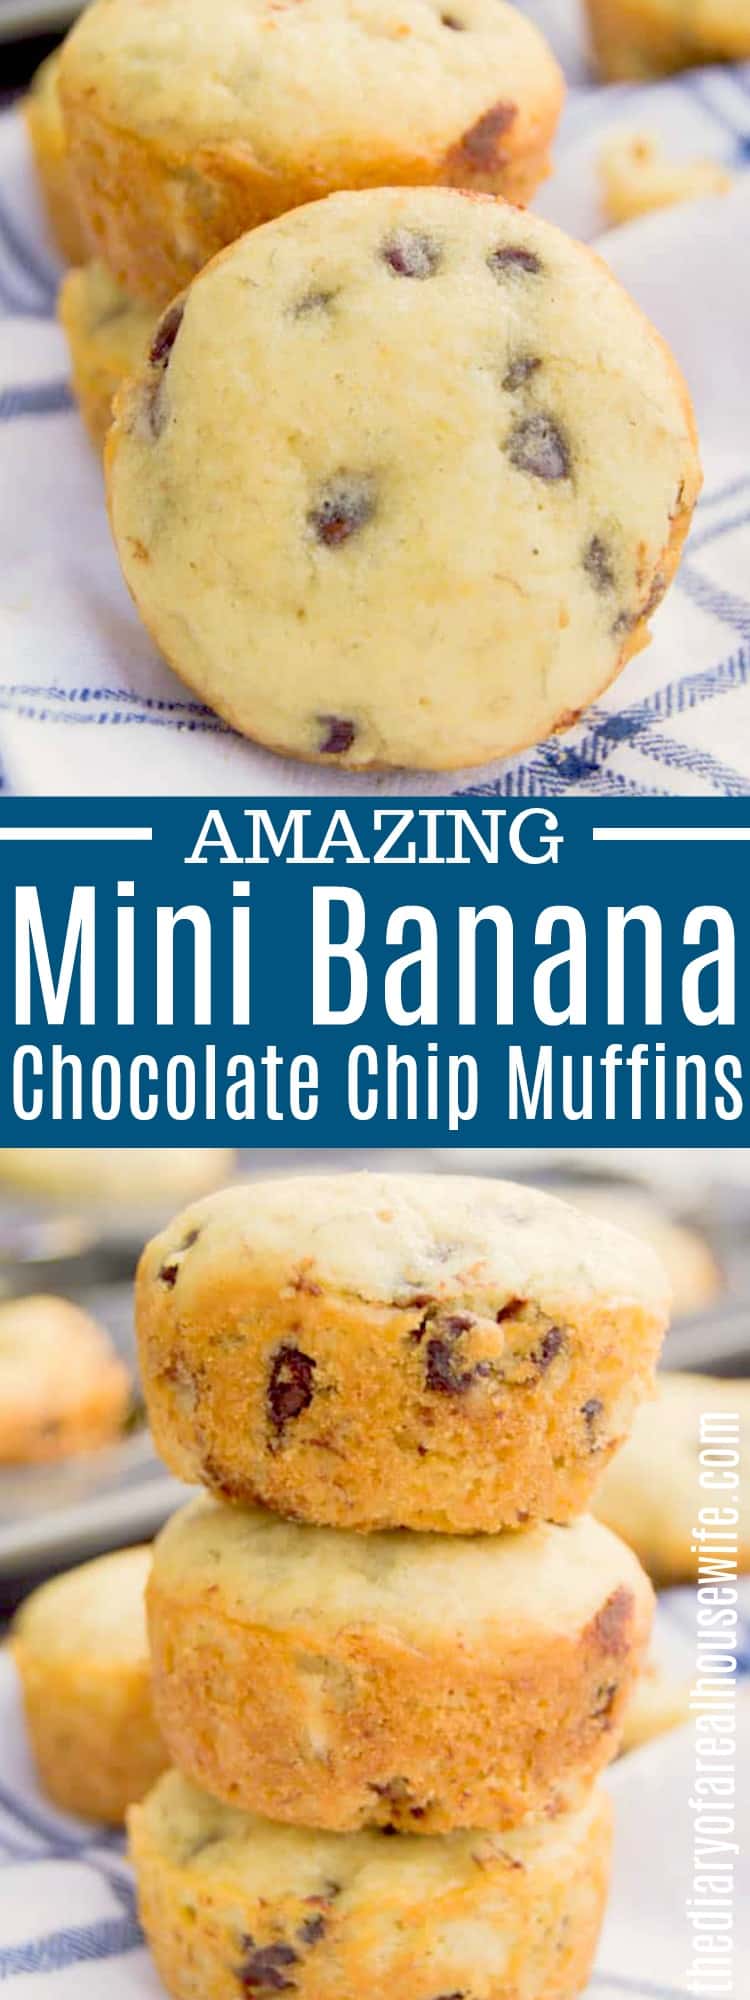 Mini Banana Chocolate Chip Muffins